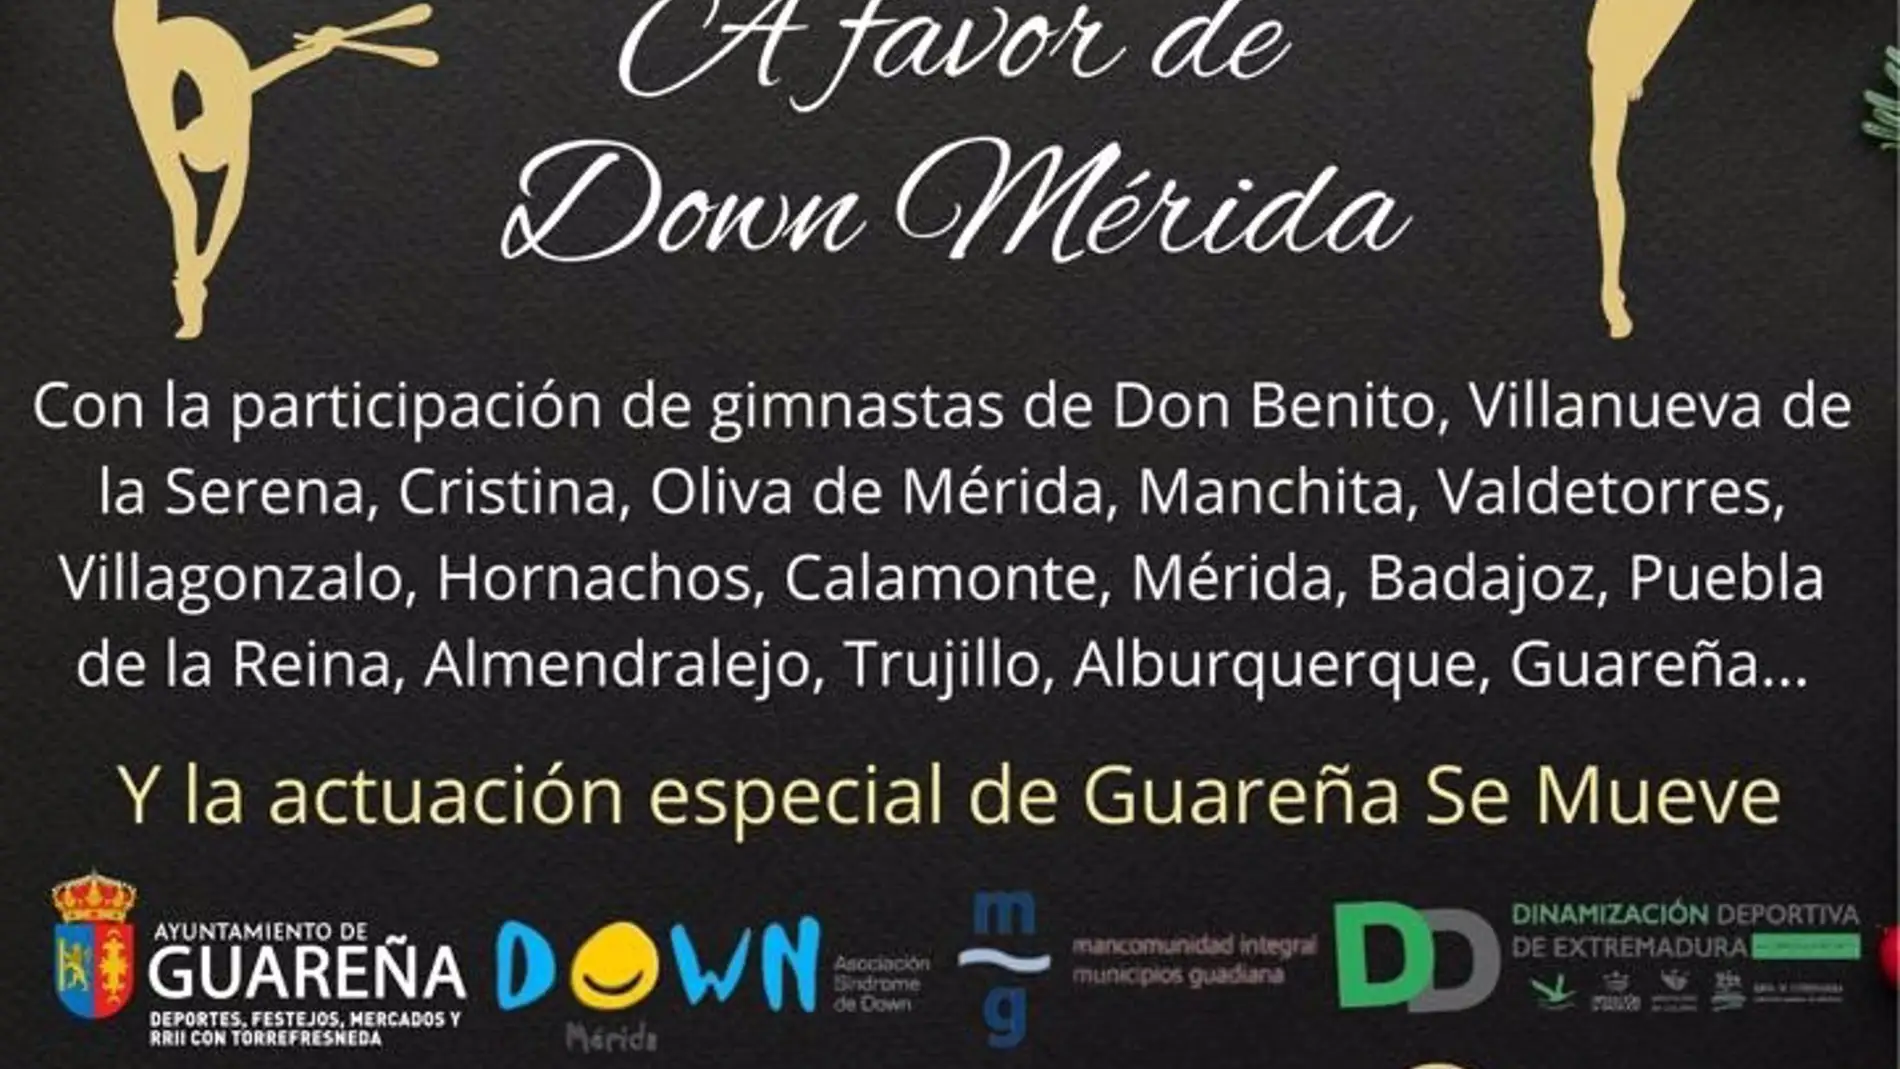 Una gala benéfica de Gimnasia Rítmica recaudará fondos el 20 de diciembre en Guareña para la asociación Down Mérida